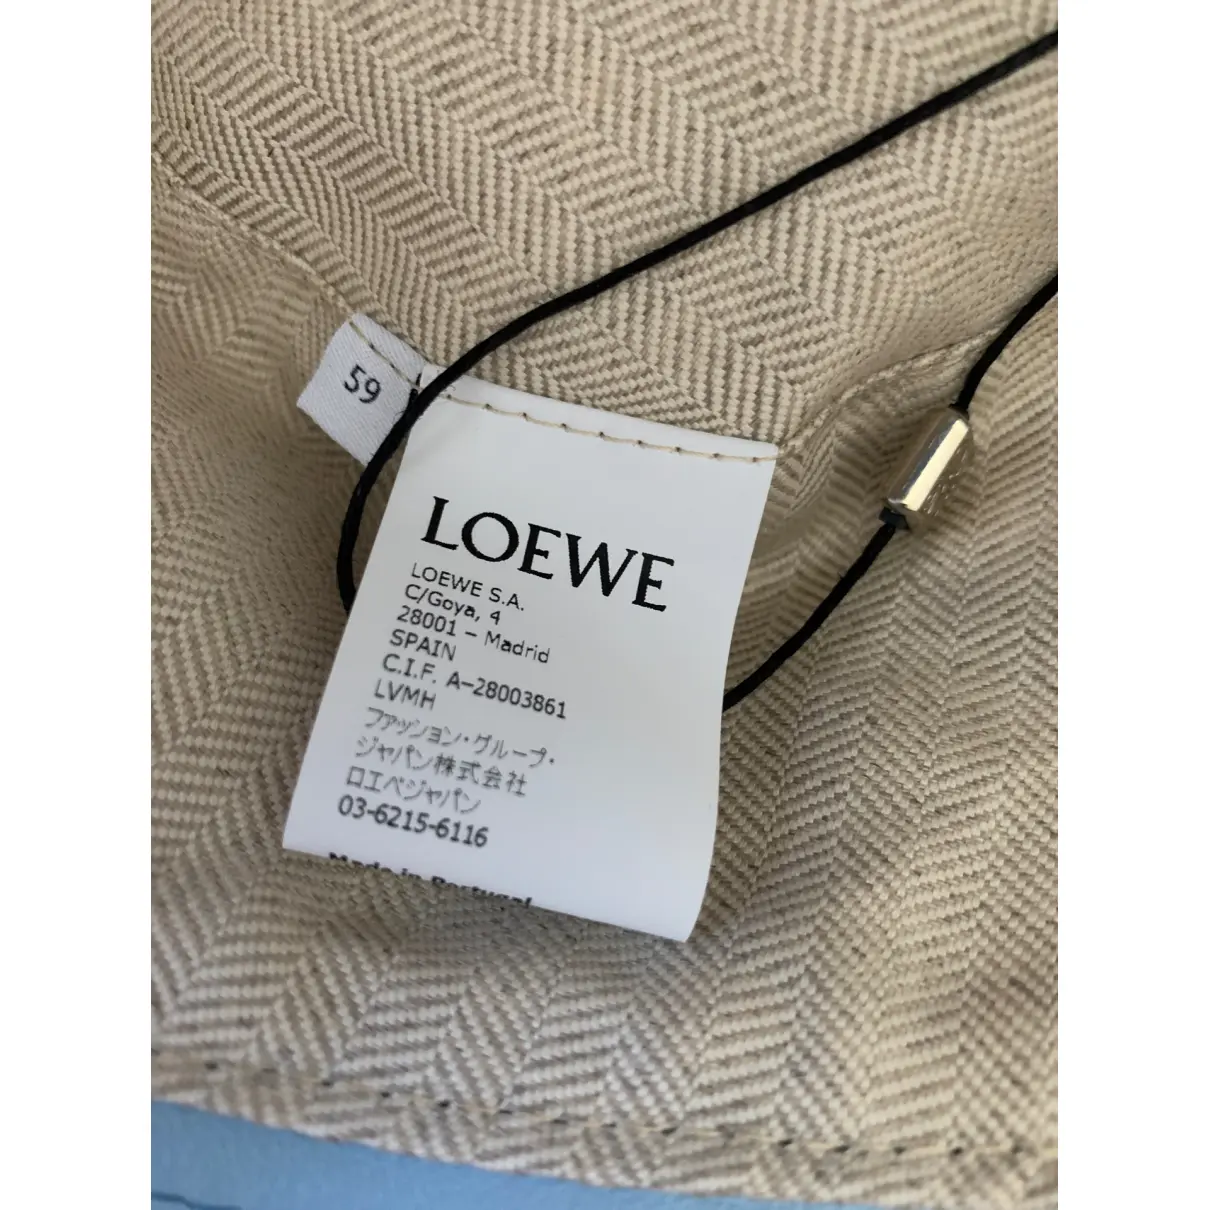 Buy Loewe Leather hat online